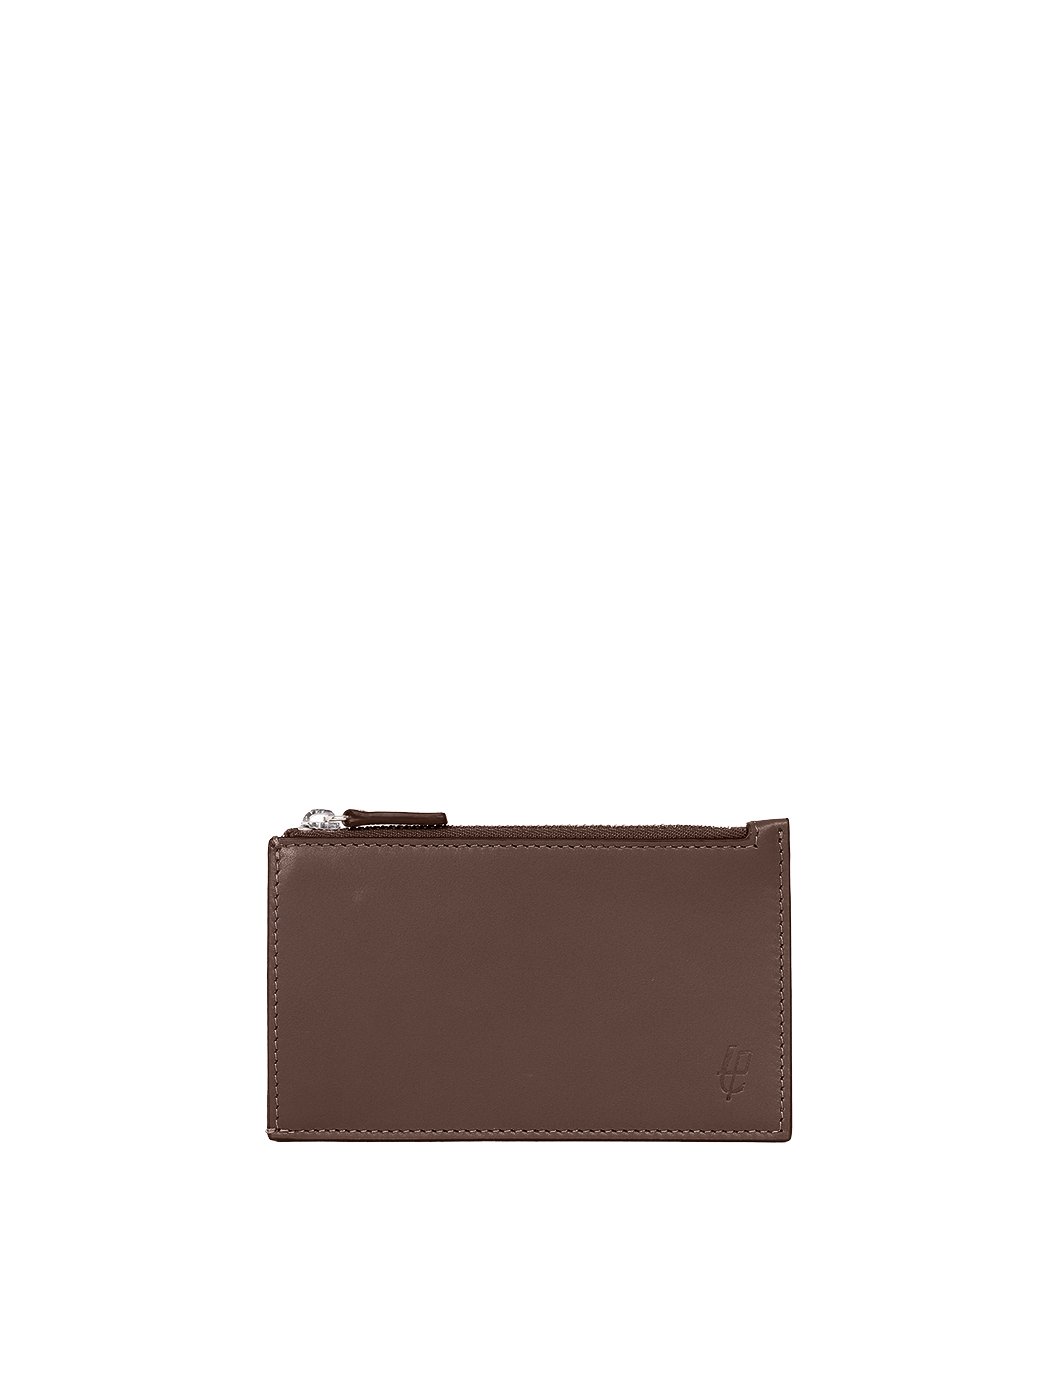 Держатель для банковских карт с карманом на молнии темно - коричневого цвета